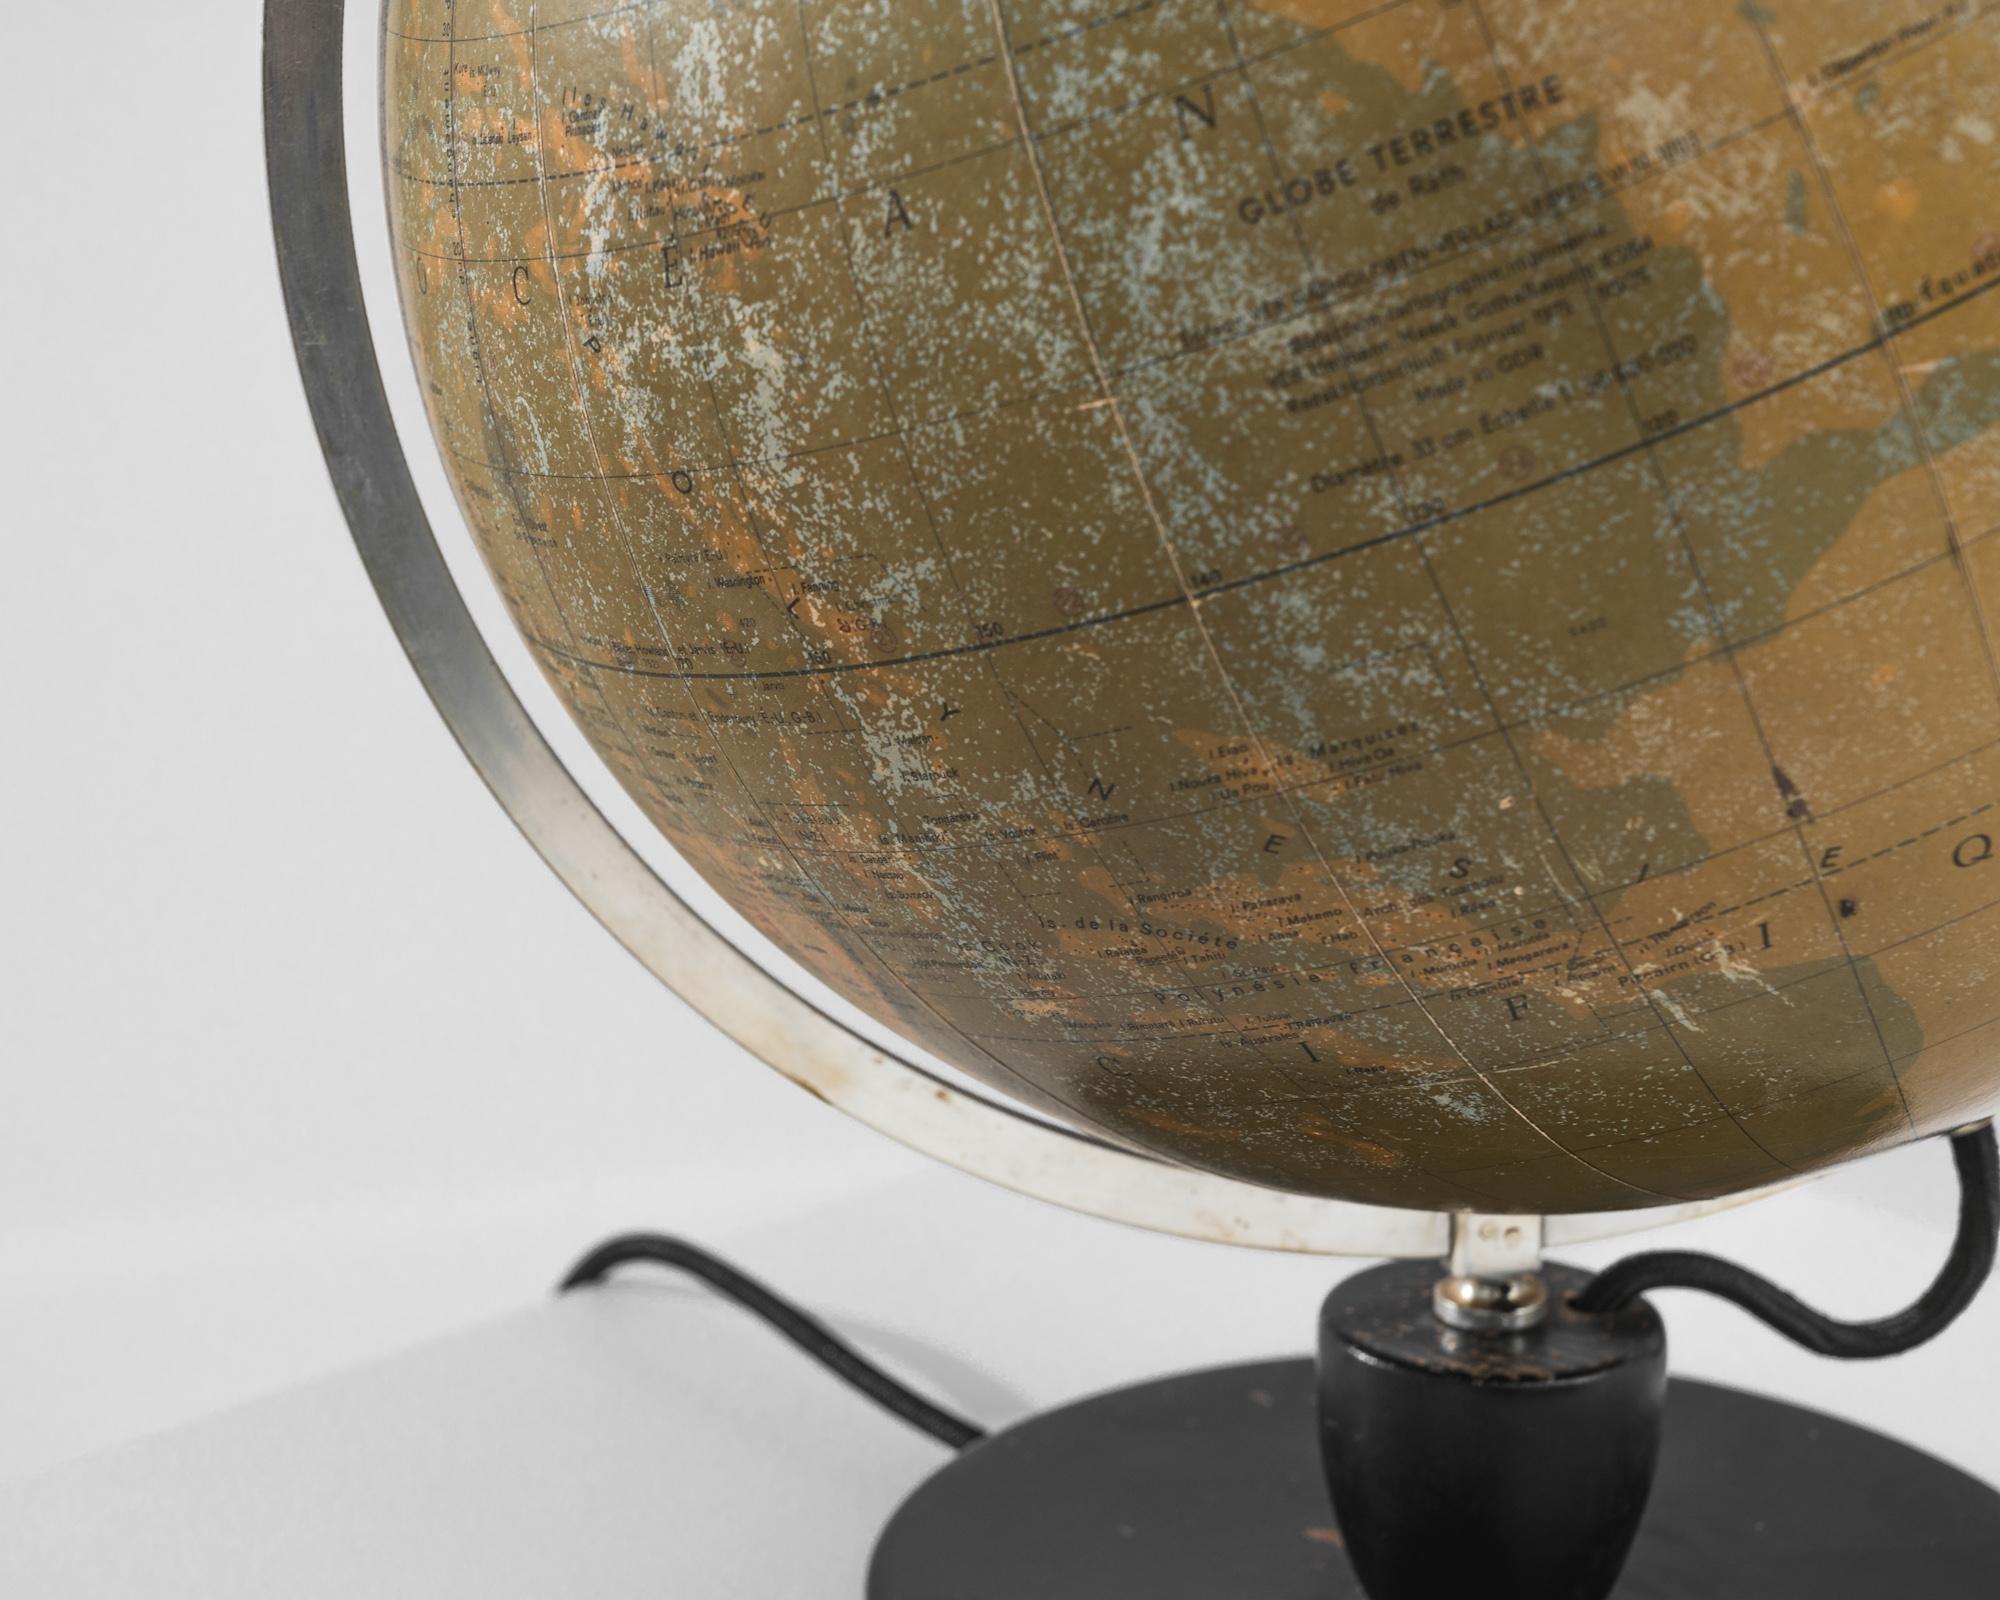 Embarquez pour un voyage à travers le temps et la géographie avec ce globe en bois et en verre allemand des années 1950. Fabriqué à la perfection, le globe terrestre représente le monde dans une représentation étonnante des continents, des pays et